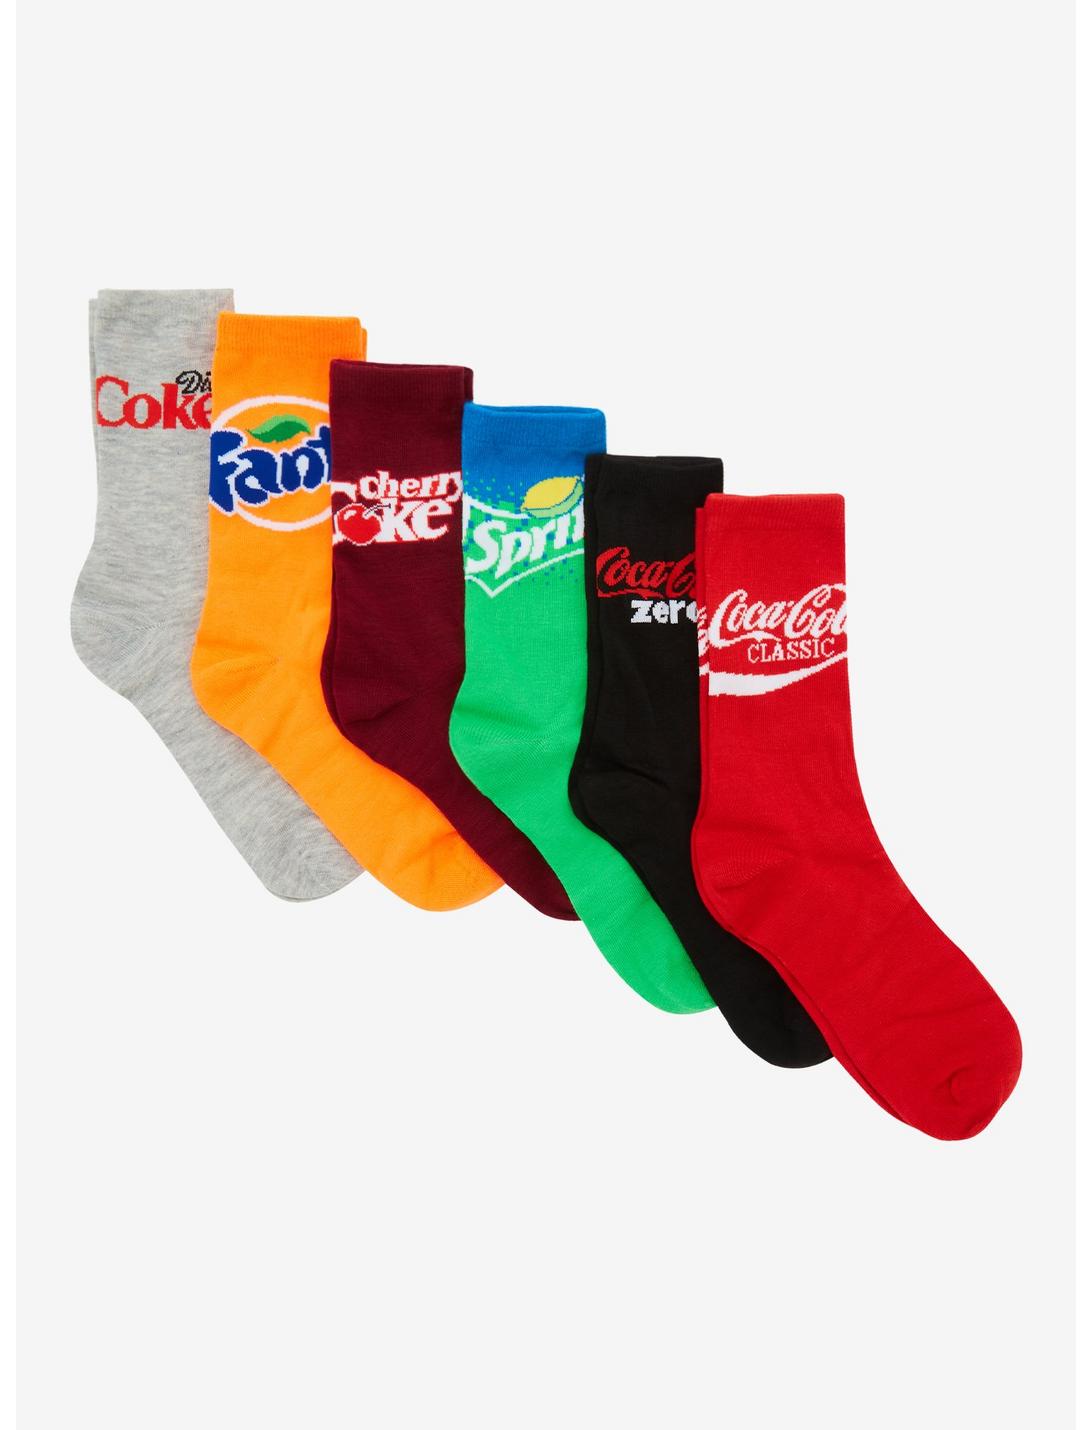 Coca-Cola Soda Box Crew Socks 6 Pair, , hi-res